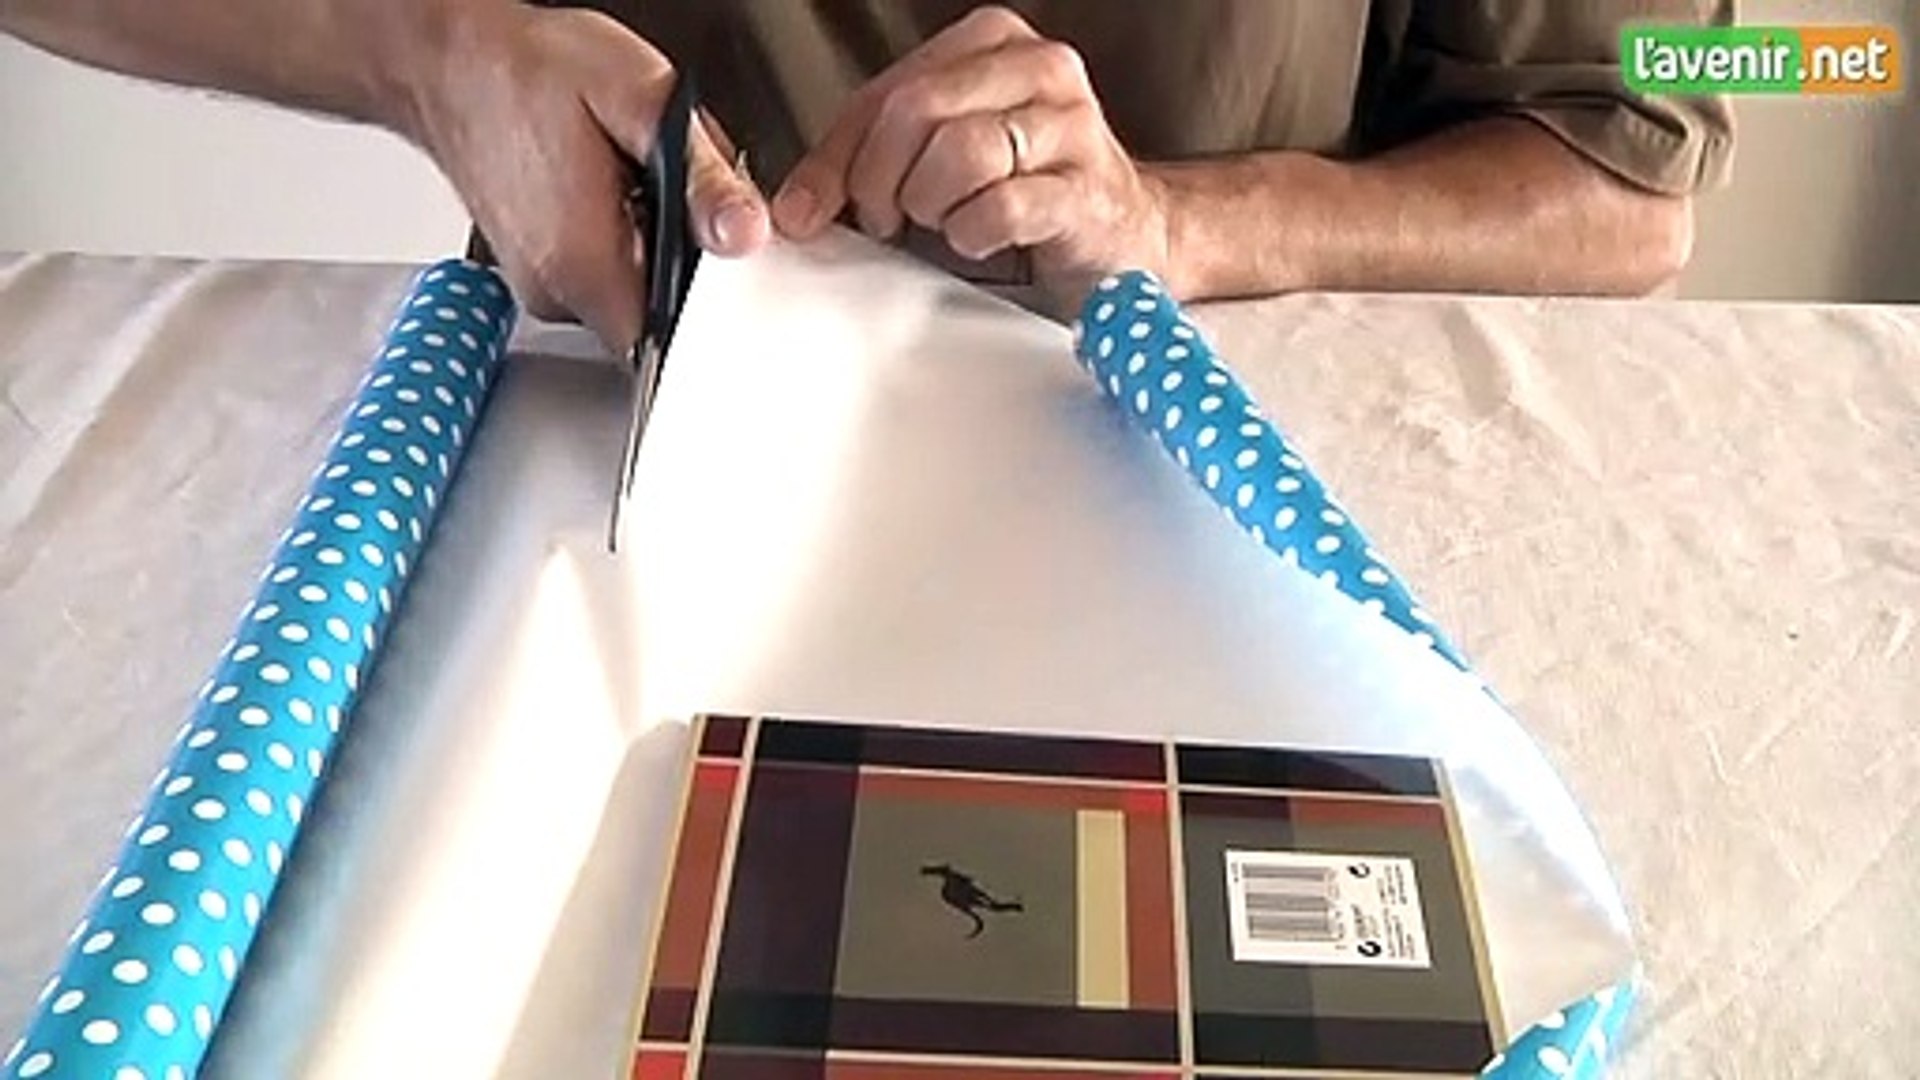 L'Avenir - Recouvrir un cahier - papier coloré - Vidéo Dailymotion